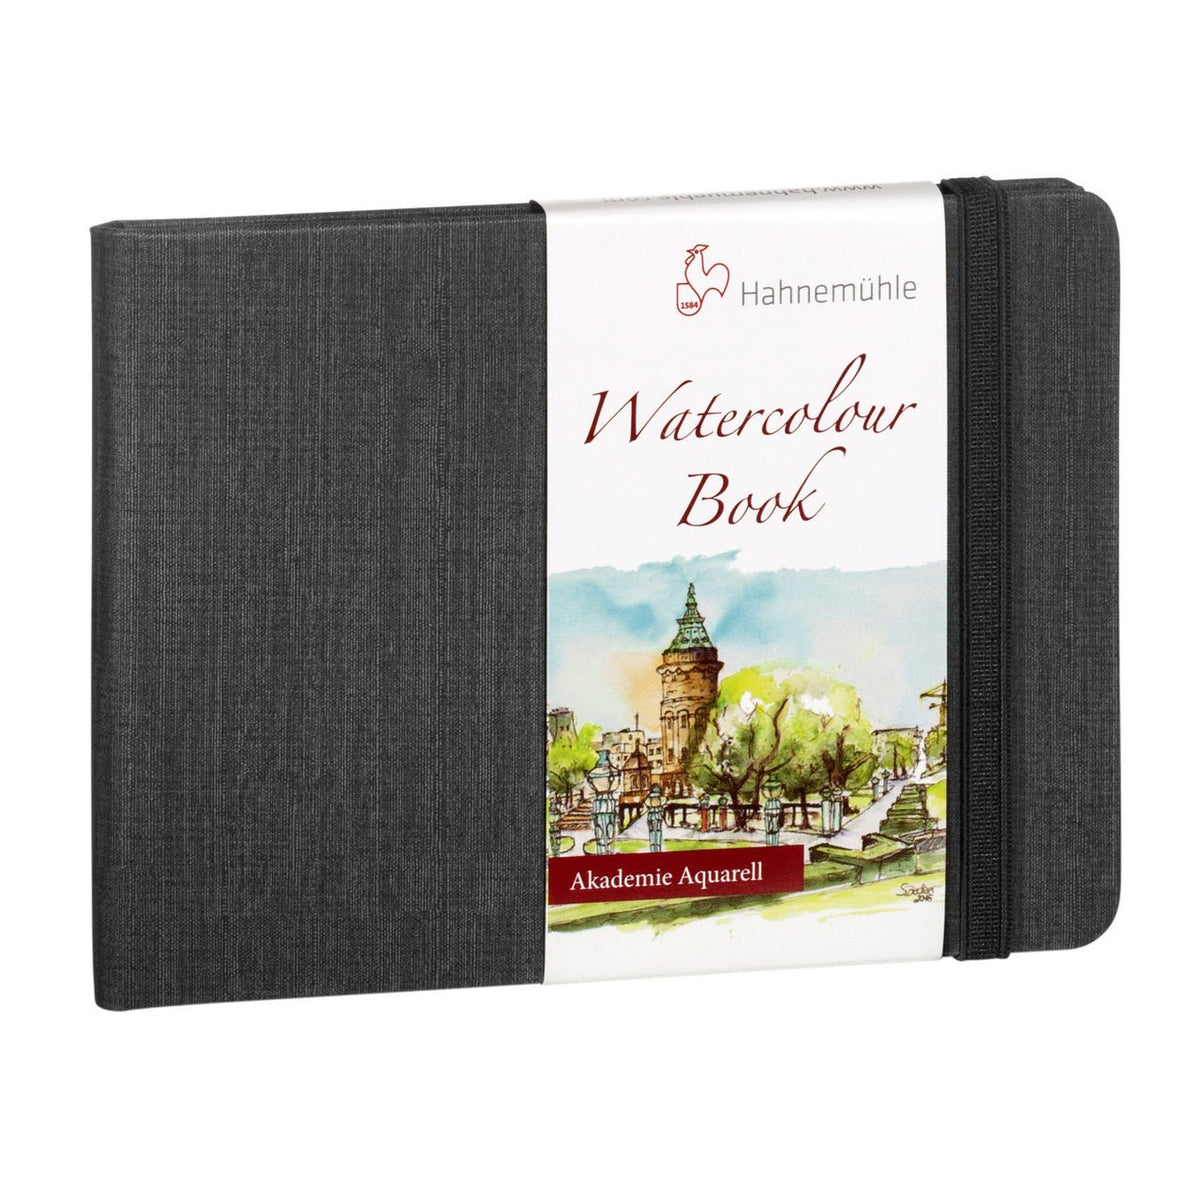 Hahnemühle 100% Cotton Watercolor Book - Landscape 8.3 x 5.8